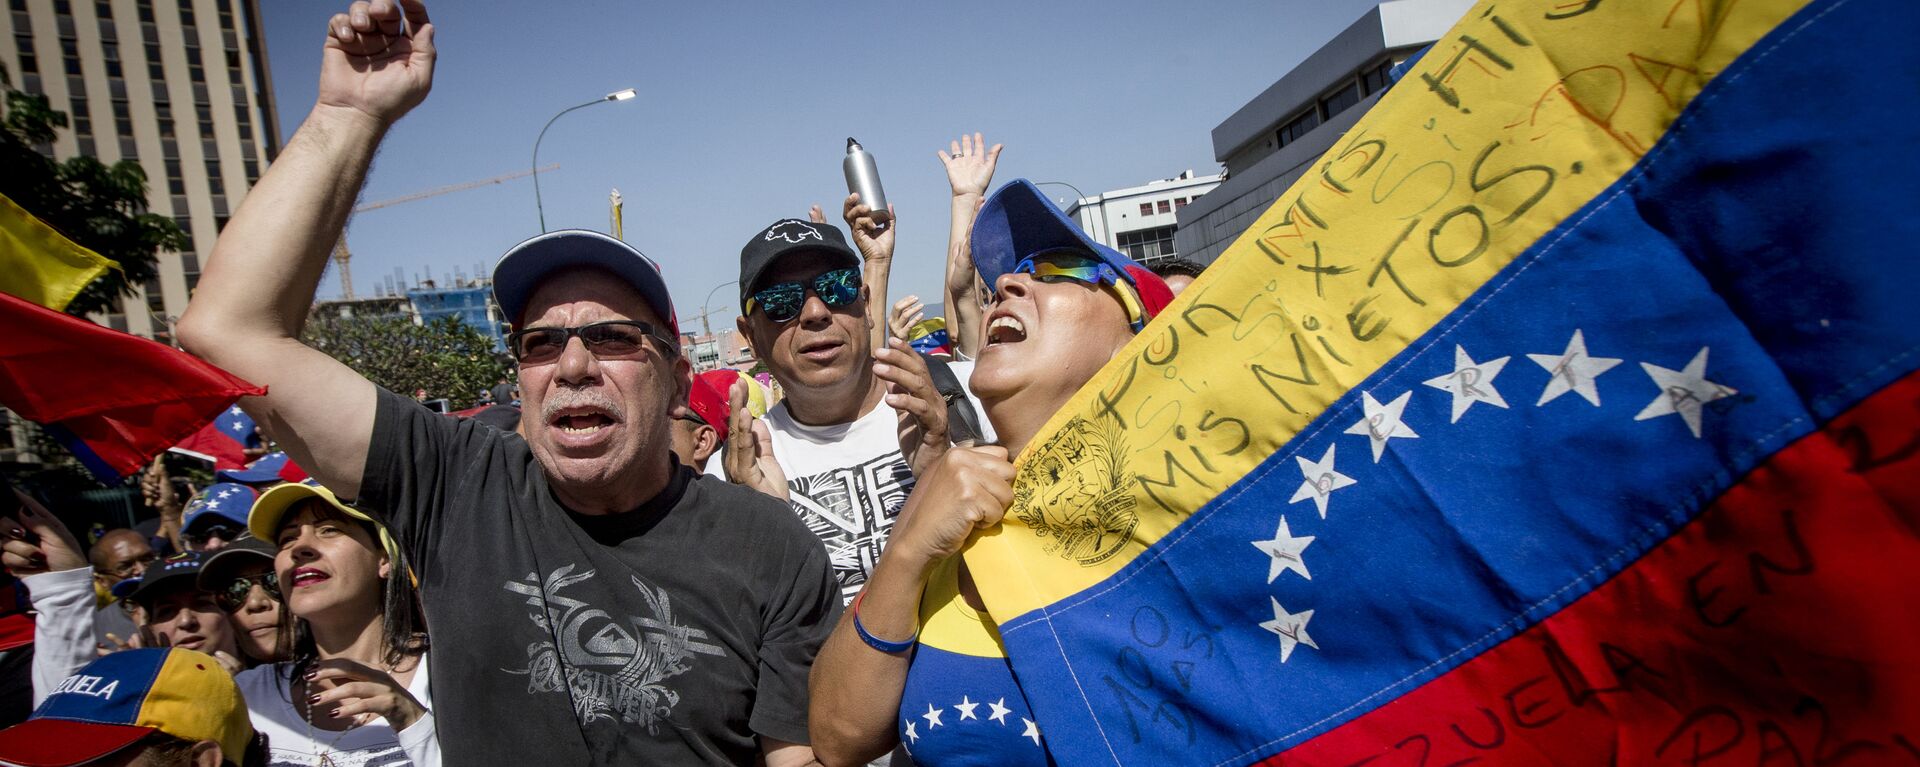 Las dos caras de Caracas: las manifestaciones con los partidarios de Maduro y Guaidó - Sputnik Mundo, 1920, 14.07.2021